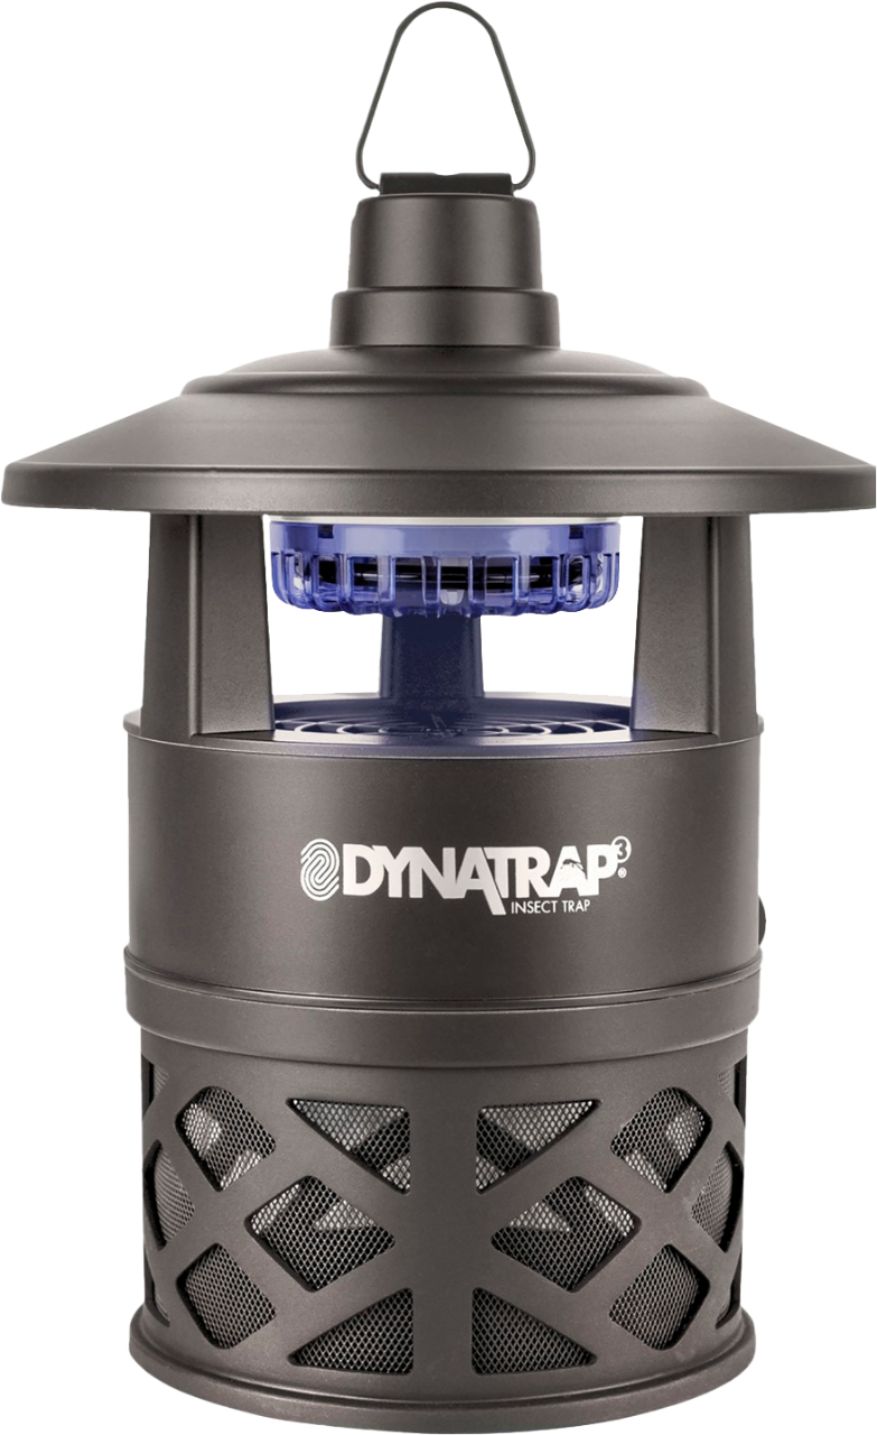 Angle View: DynaTrap - 1/4-Acre Tungsten Decora Series Insect Trap - Metallic